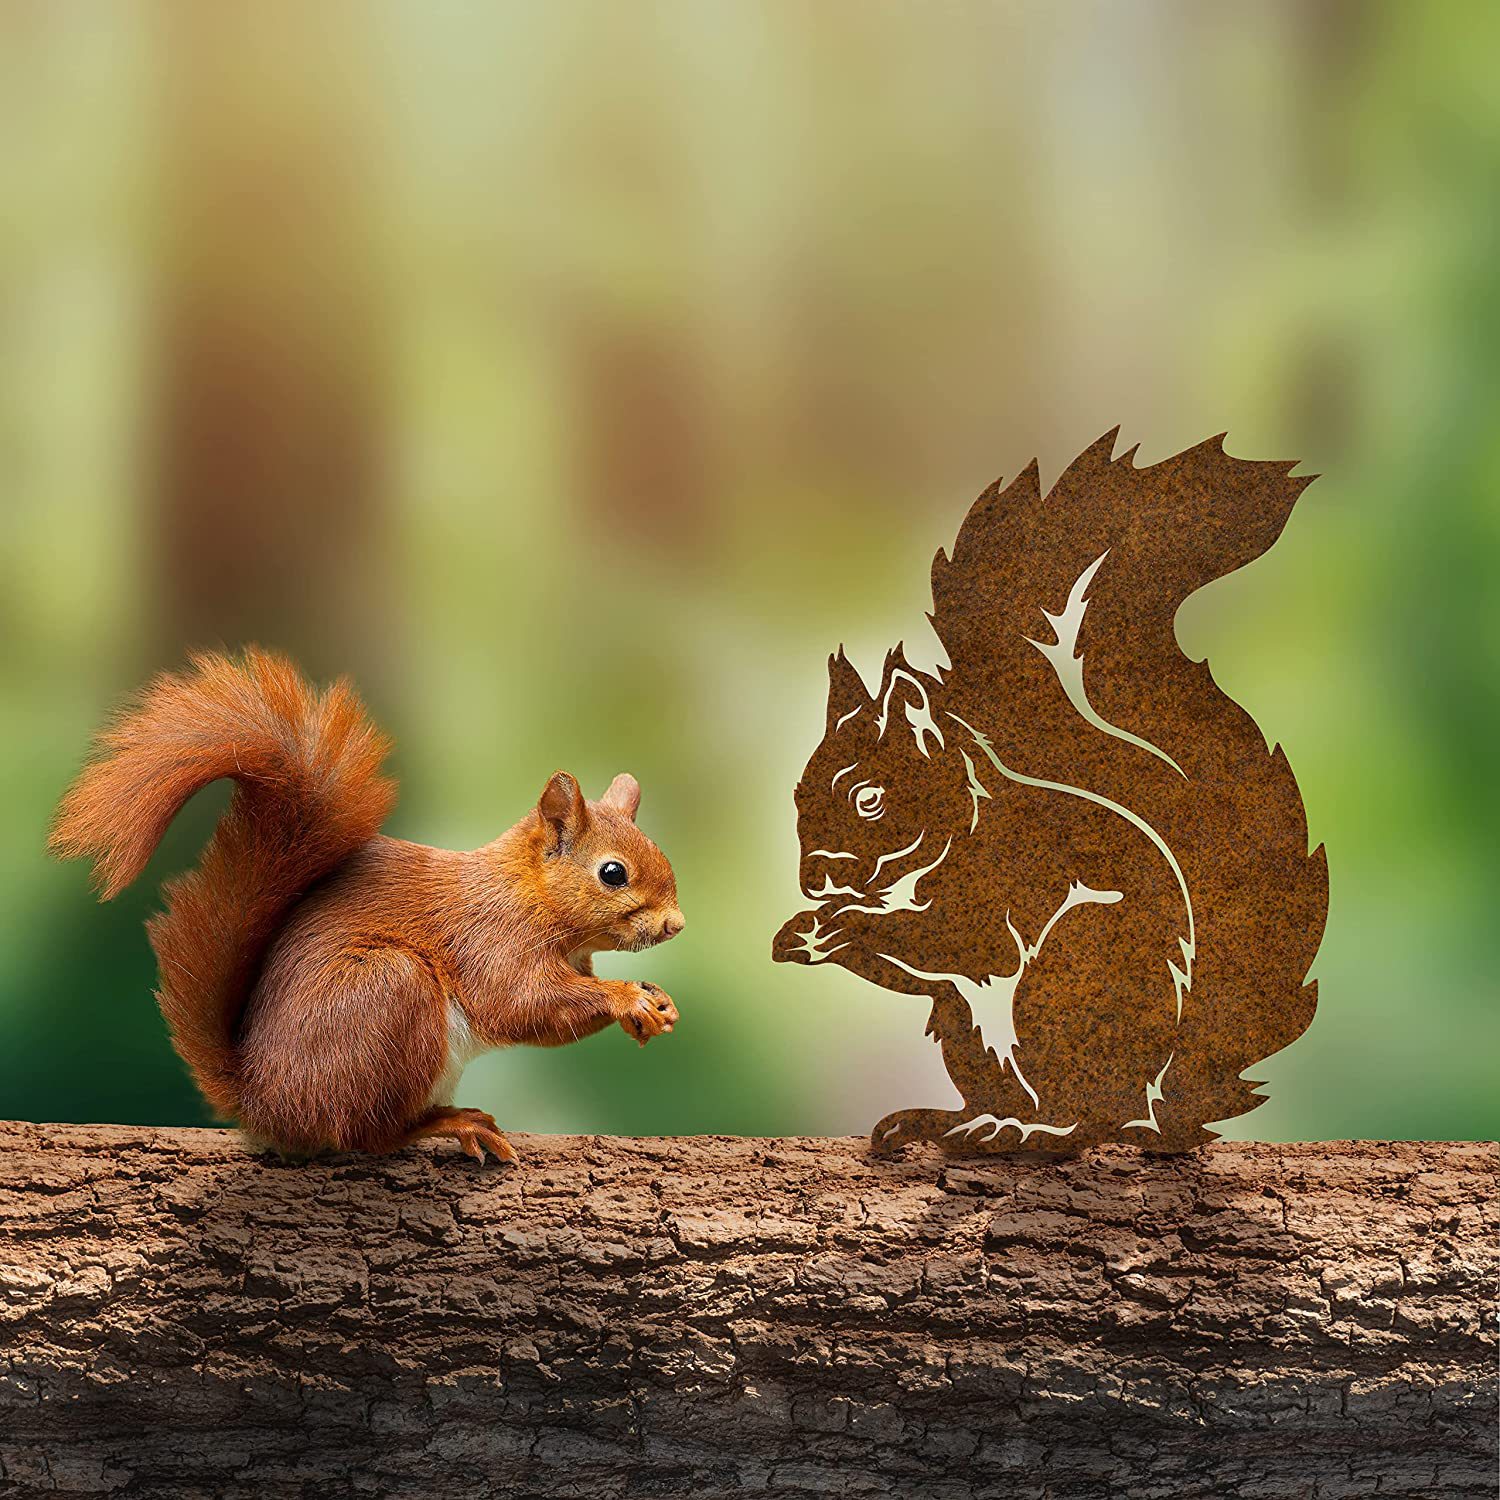 亚马逊现货Rusty Squirrel花园装饰生锈的松鼠室外摆件铁艺工艺品详情图2